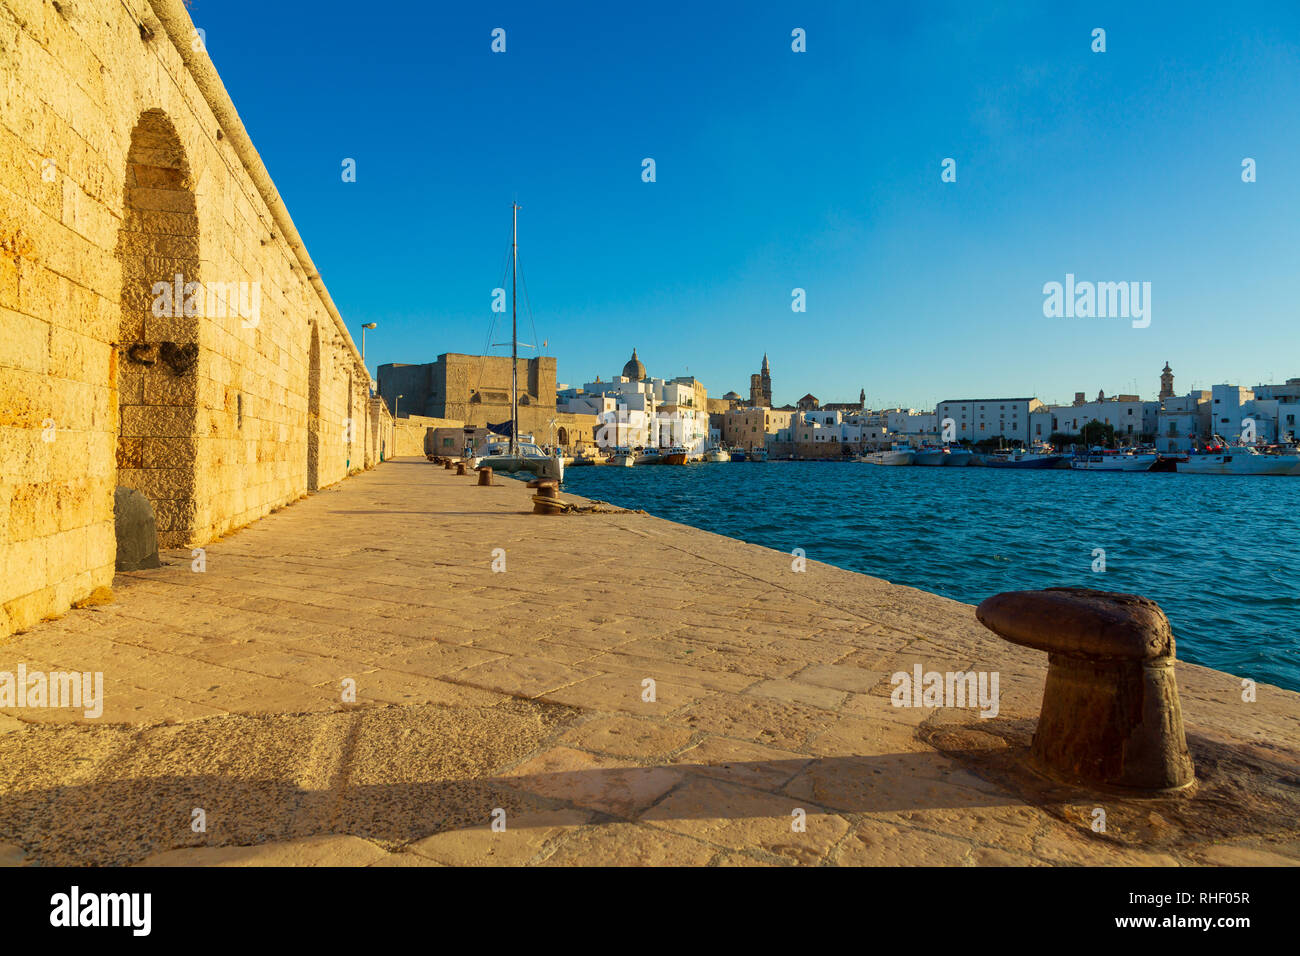 View of scenic city scape et un port de pêche avec marina à Monopoli, Italie Banque D'Images